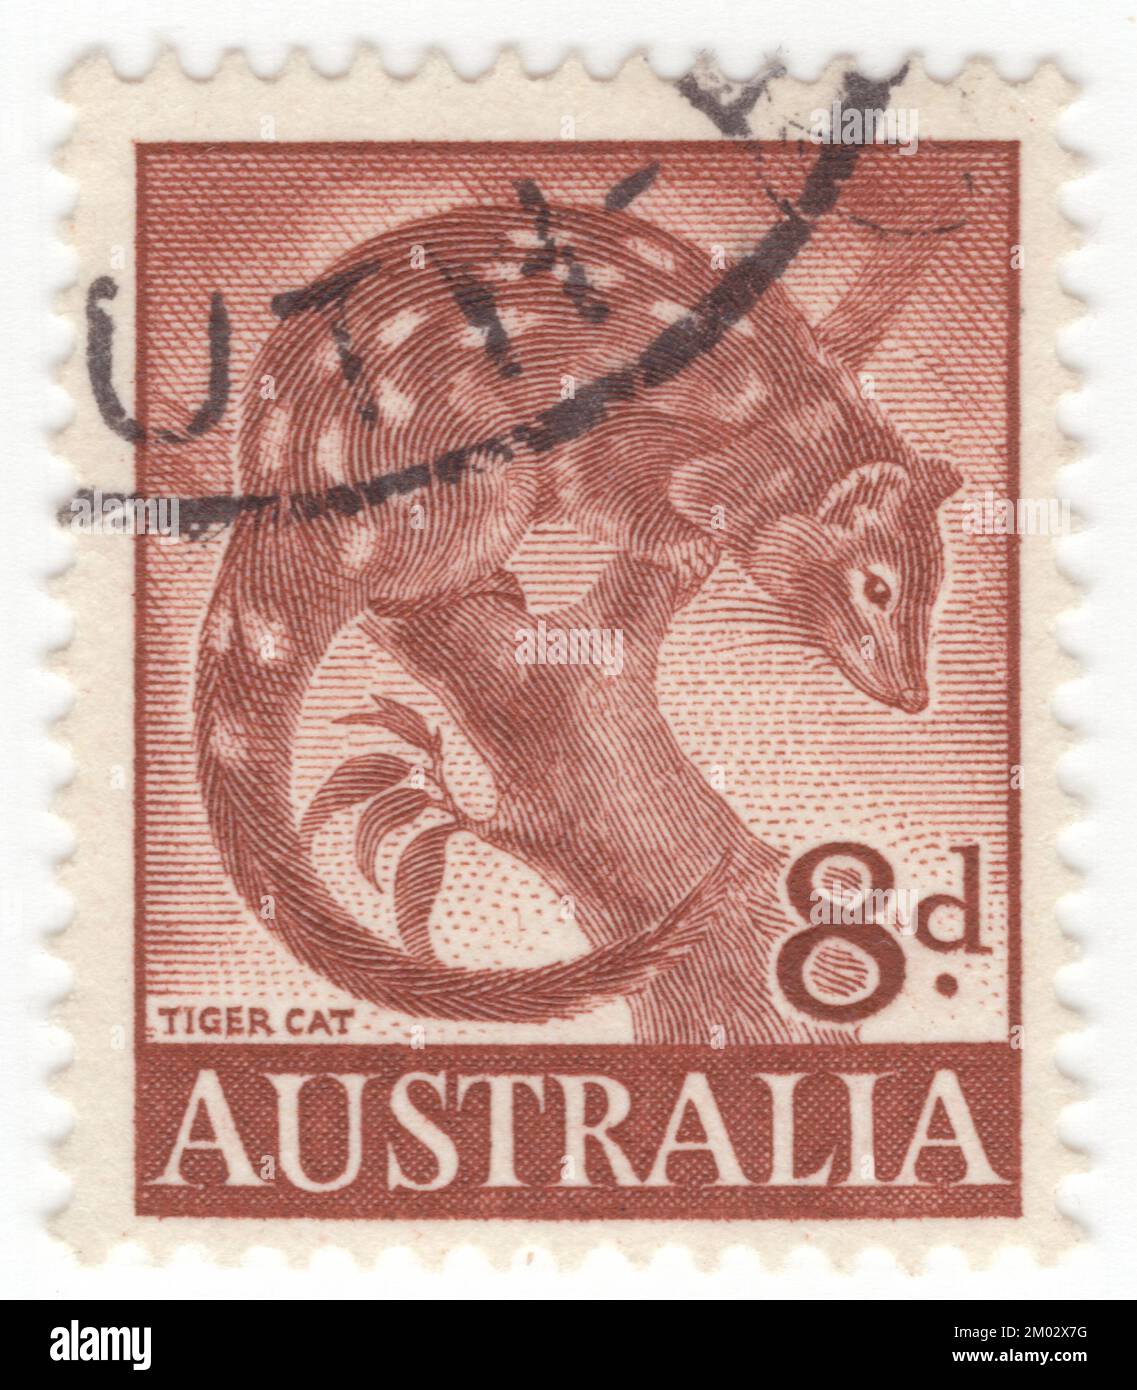 AUSTRALIEN — 1960. Mai 11: Ein rot-brauner Briefmarken mit 8 Pence, der Tigerquoll (Dasyurus maculatus) darstellt, auch bekannt als Fleckschwanzquoll, Fleckquoll, Fleckschwanz-Dasyure, einheimische Katze oder Tigerkatze, ist ein fleischfressendes Marsupial der australischen Gattung Dasyurus. Mit einem Gewicht von etwa 3,5 bzw. 1,8 kg (7,7 bzw. 4,0 lb) ist es das weltweit zweitgrößte lebende Fleischfresser-Beuteltier hinter dem Tasmanischen Teufel. Zwei Unterarten werden anerkannt; der Nomate findet sich in feuchten Wäldern im Südosten Australiens und Tasmaniens Stockfoto